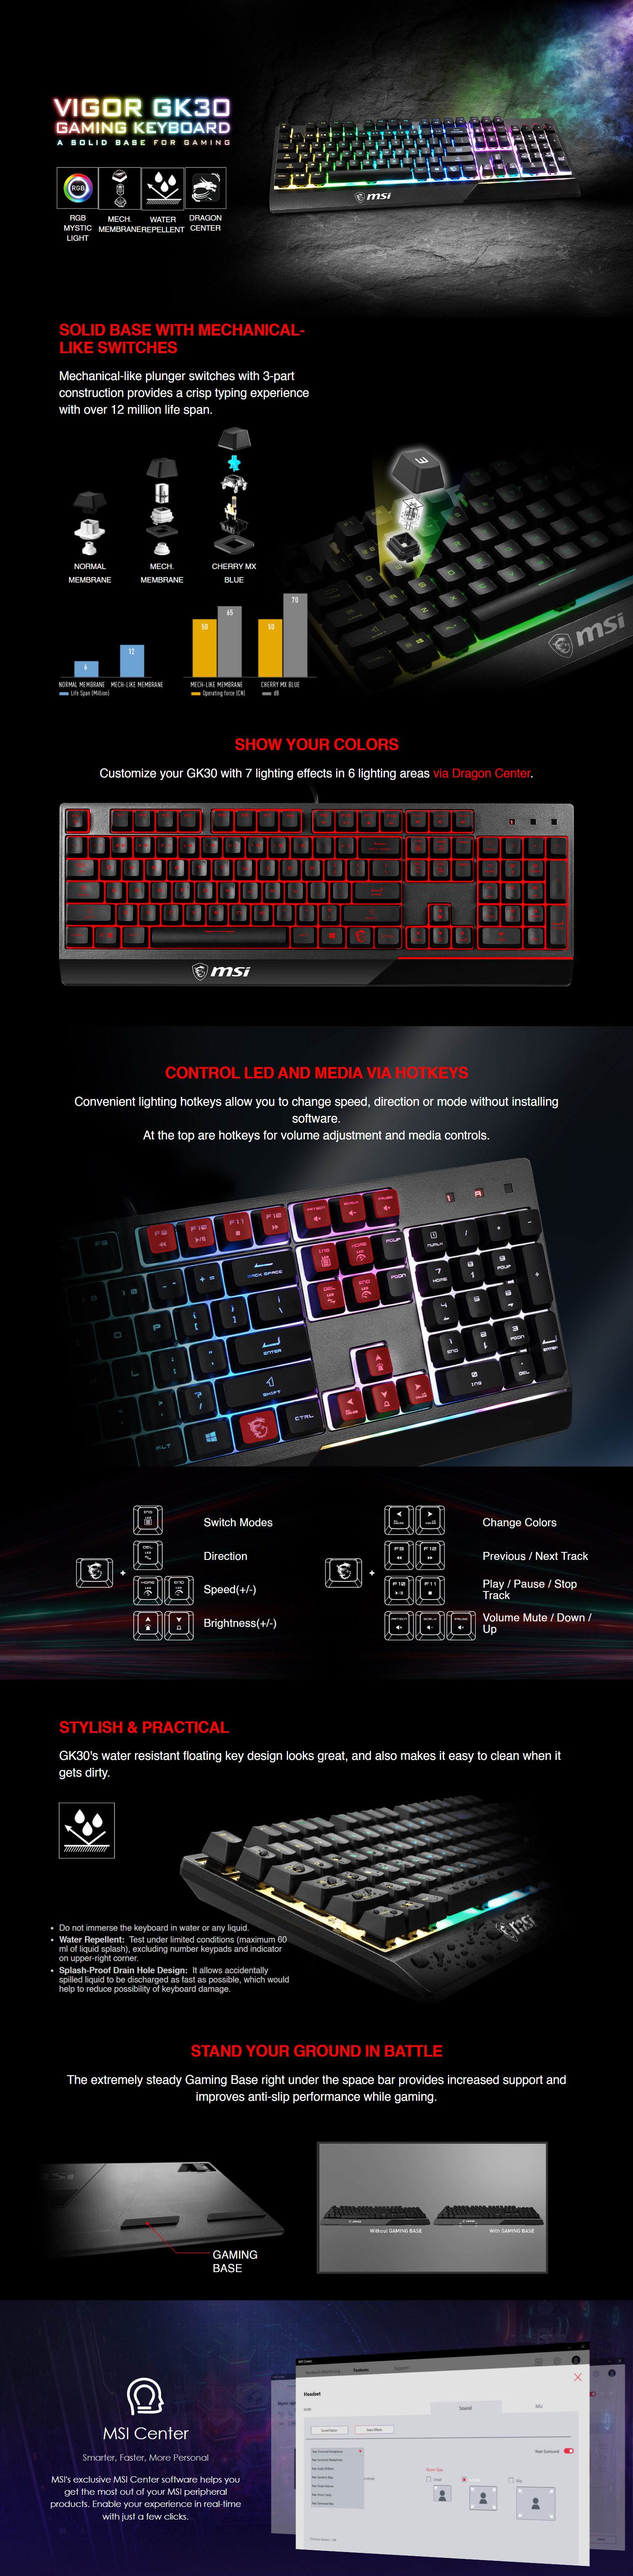 Keyboards-MSI-Vigor-GK30-Mechanical-Gaming-Keyboard-1